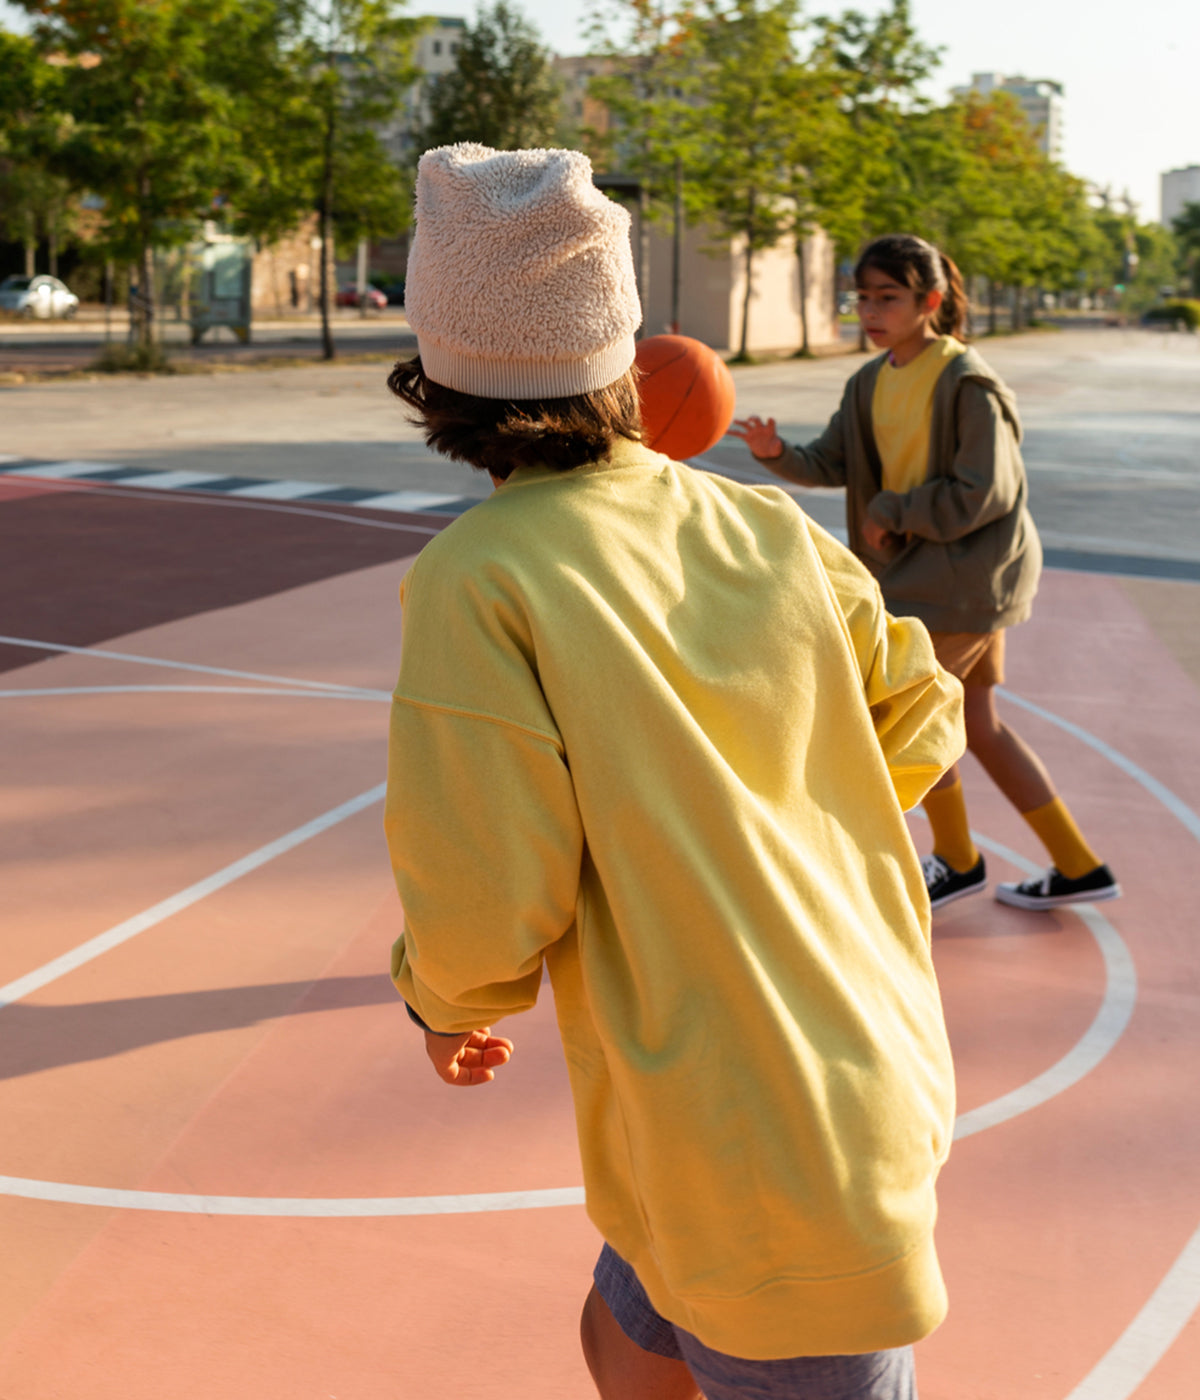 Kids Playing Basketball Outside